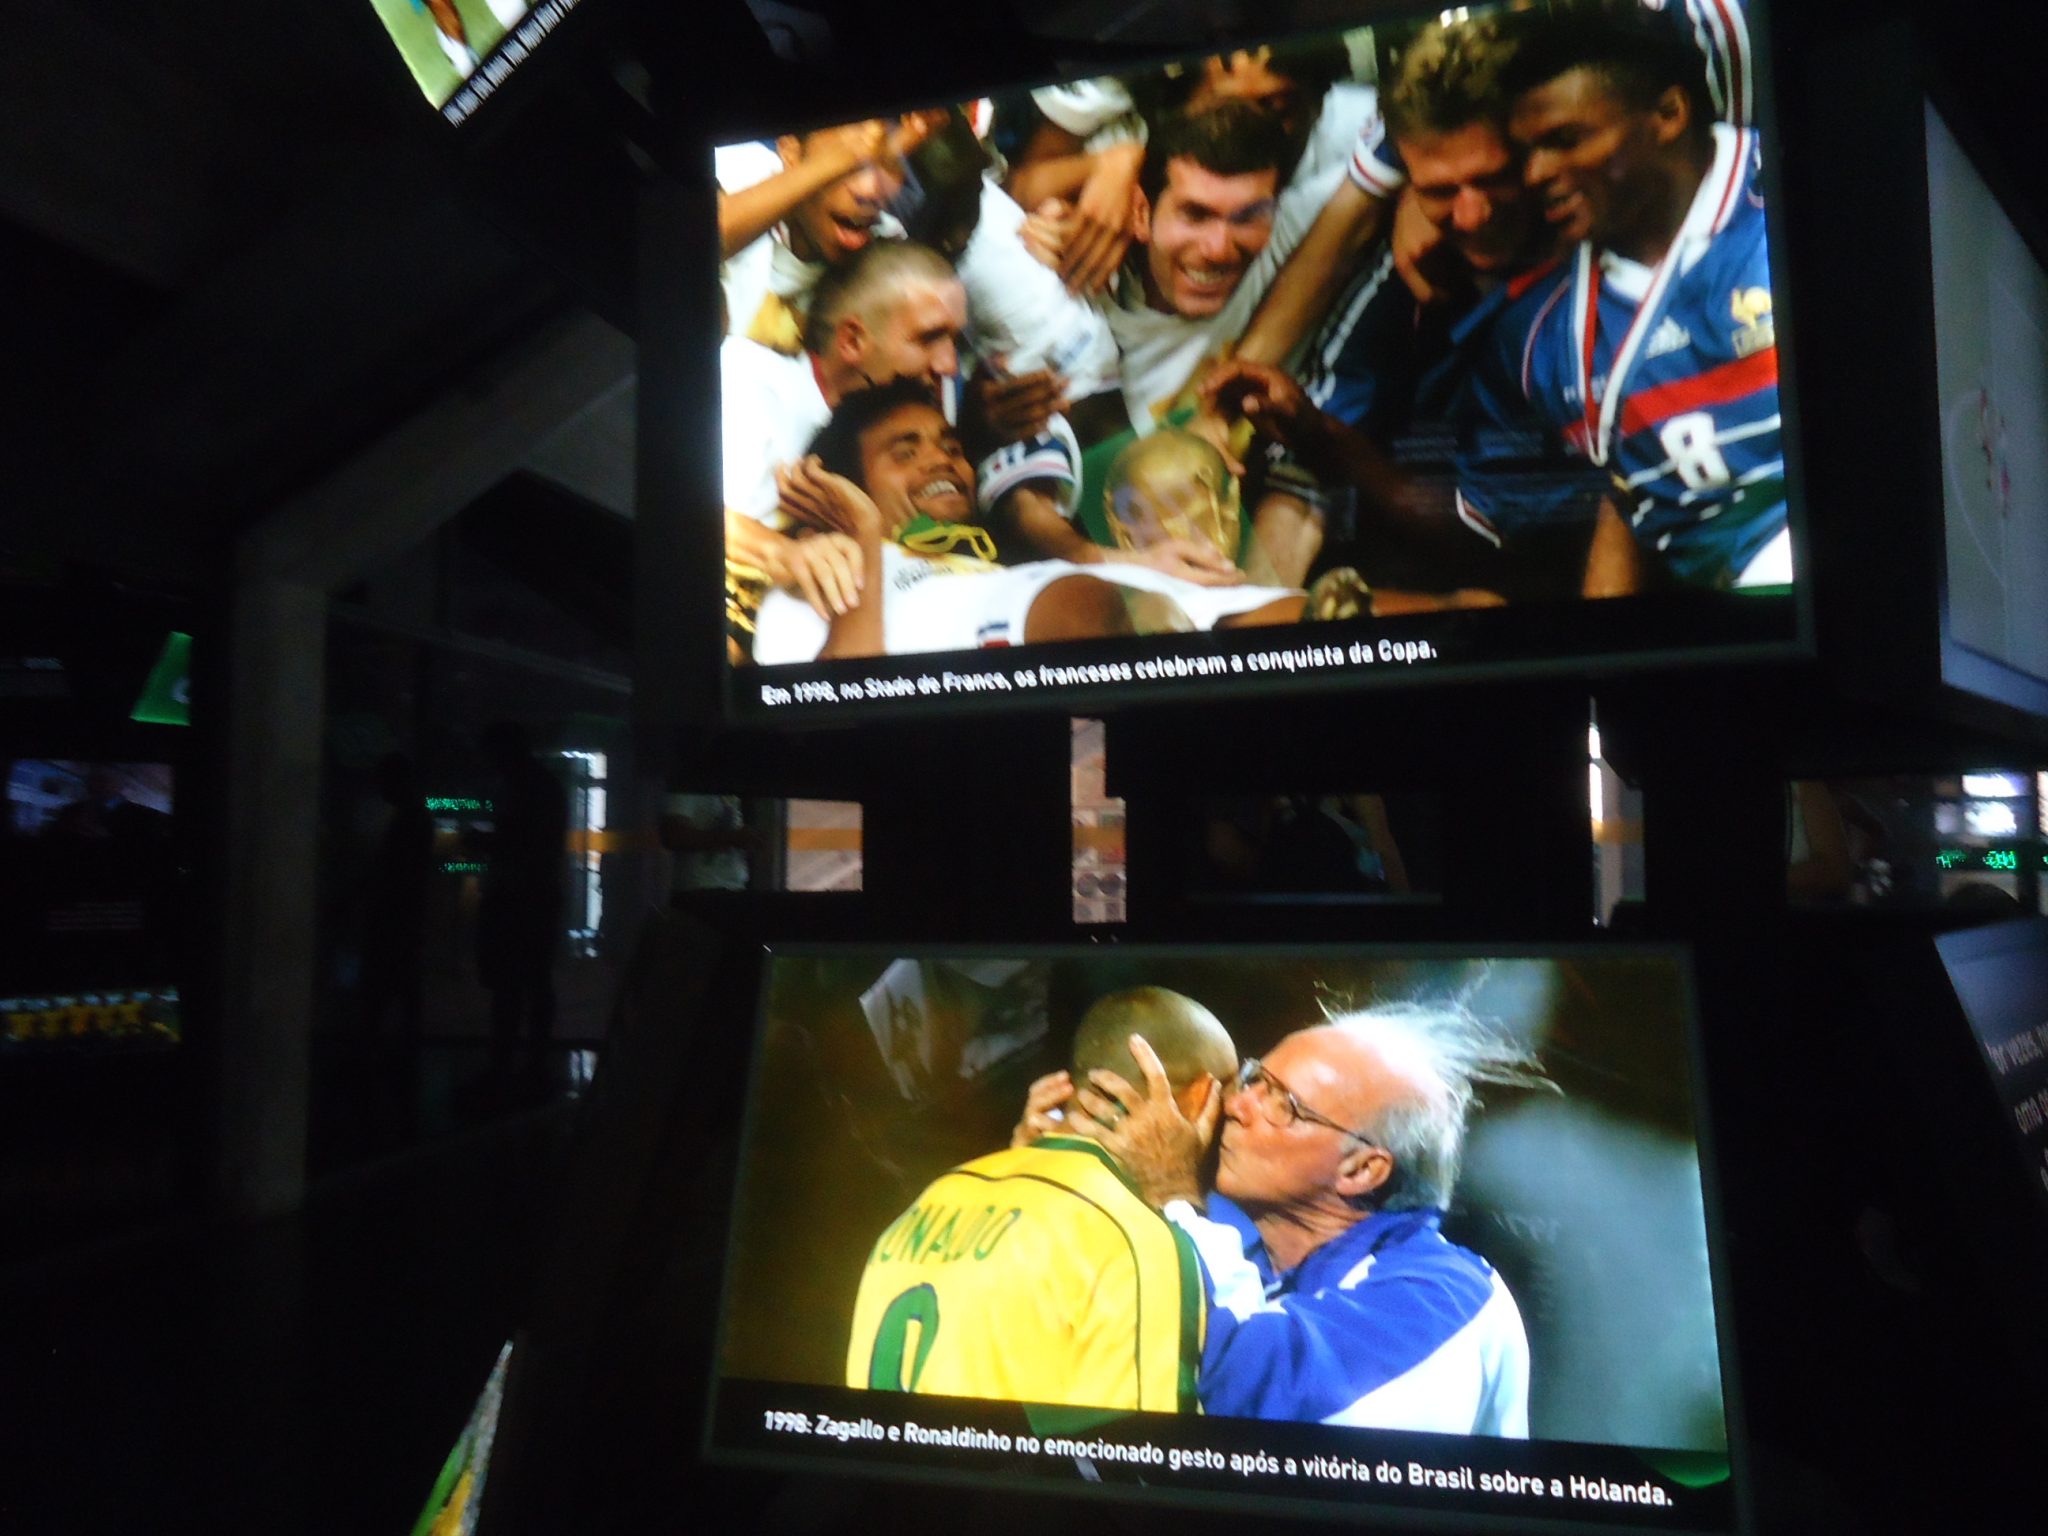 portalbrasileiro net - Conheça o Museu do Futebol